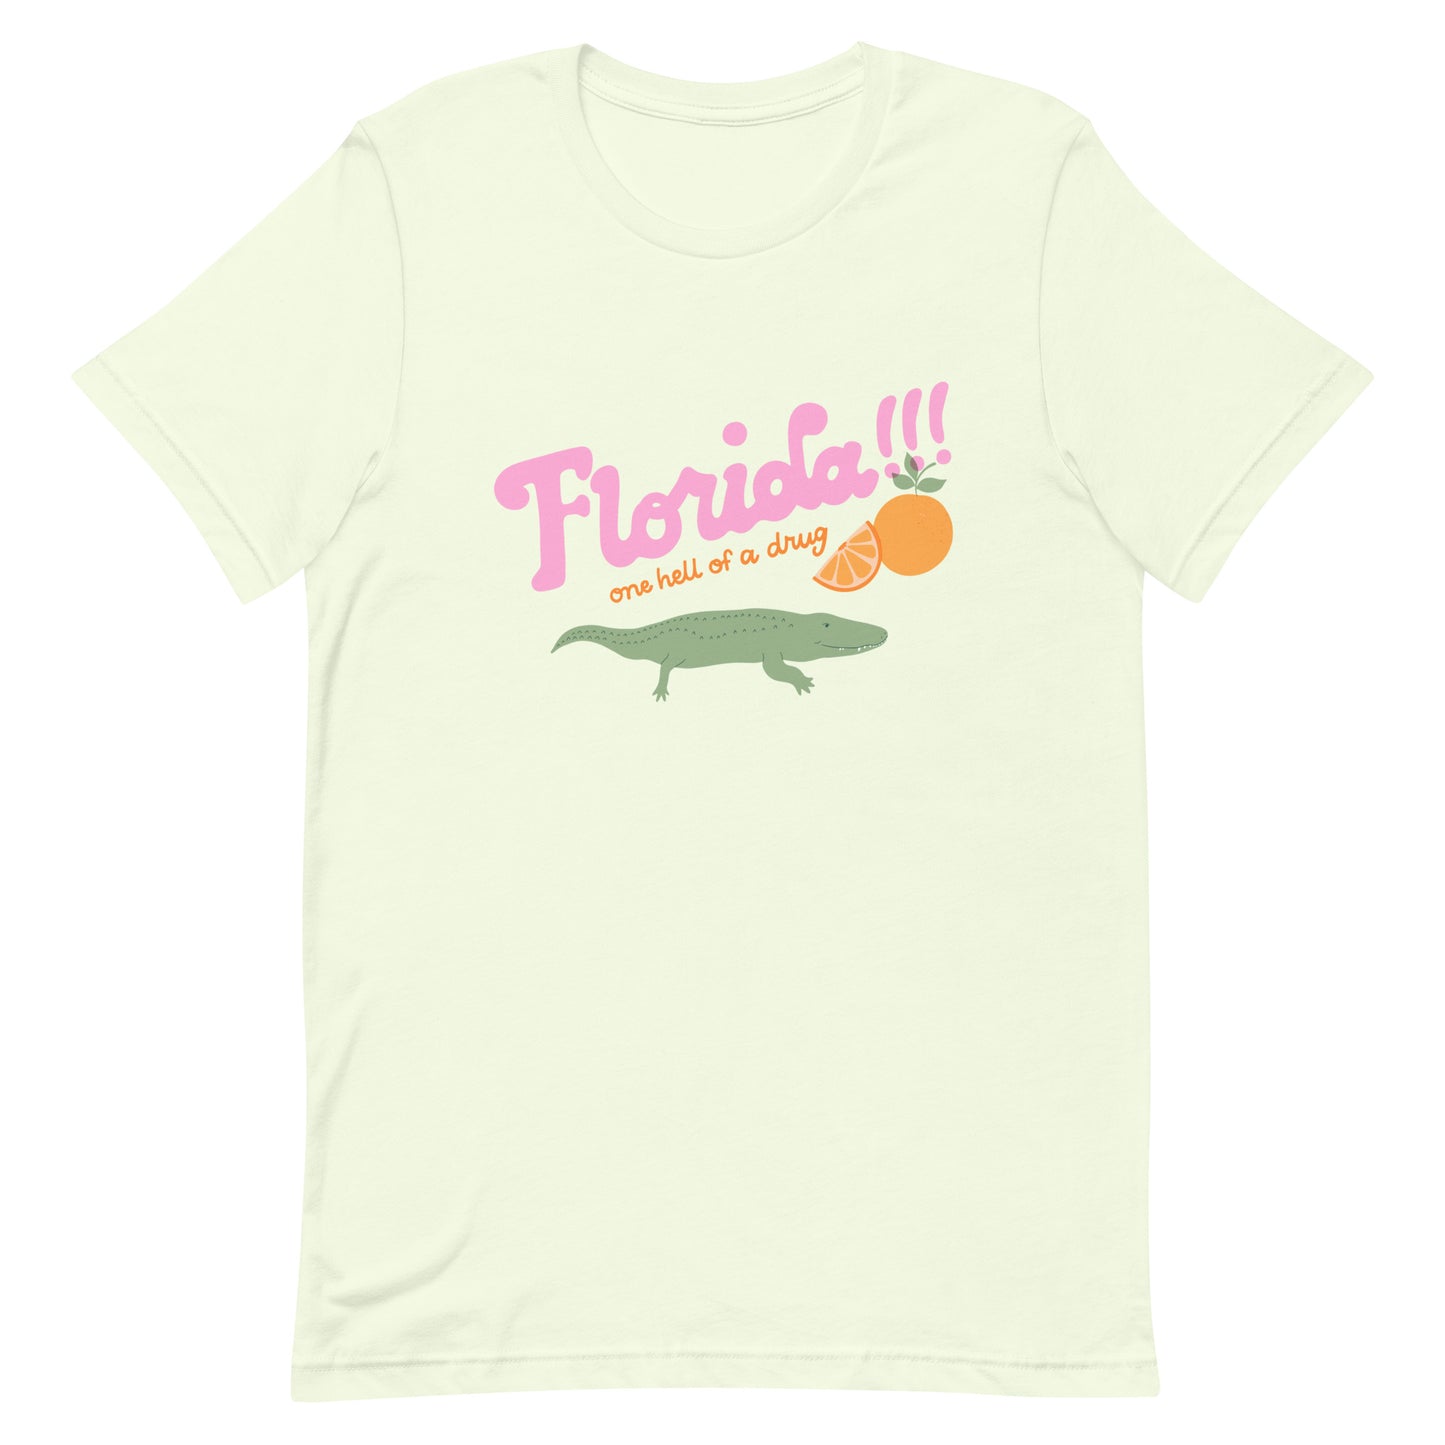 Florida!!! unisex t-shirt